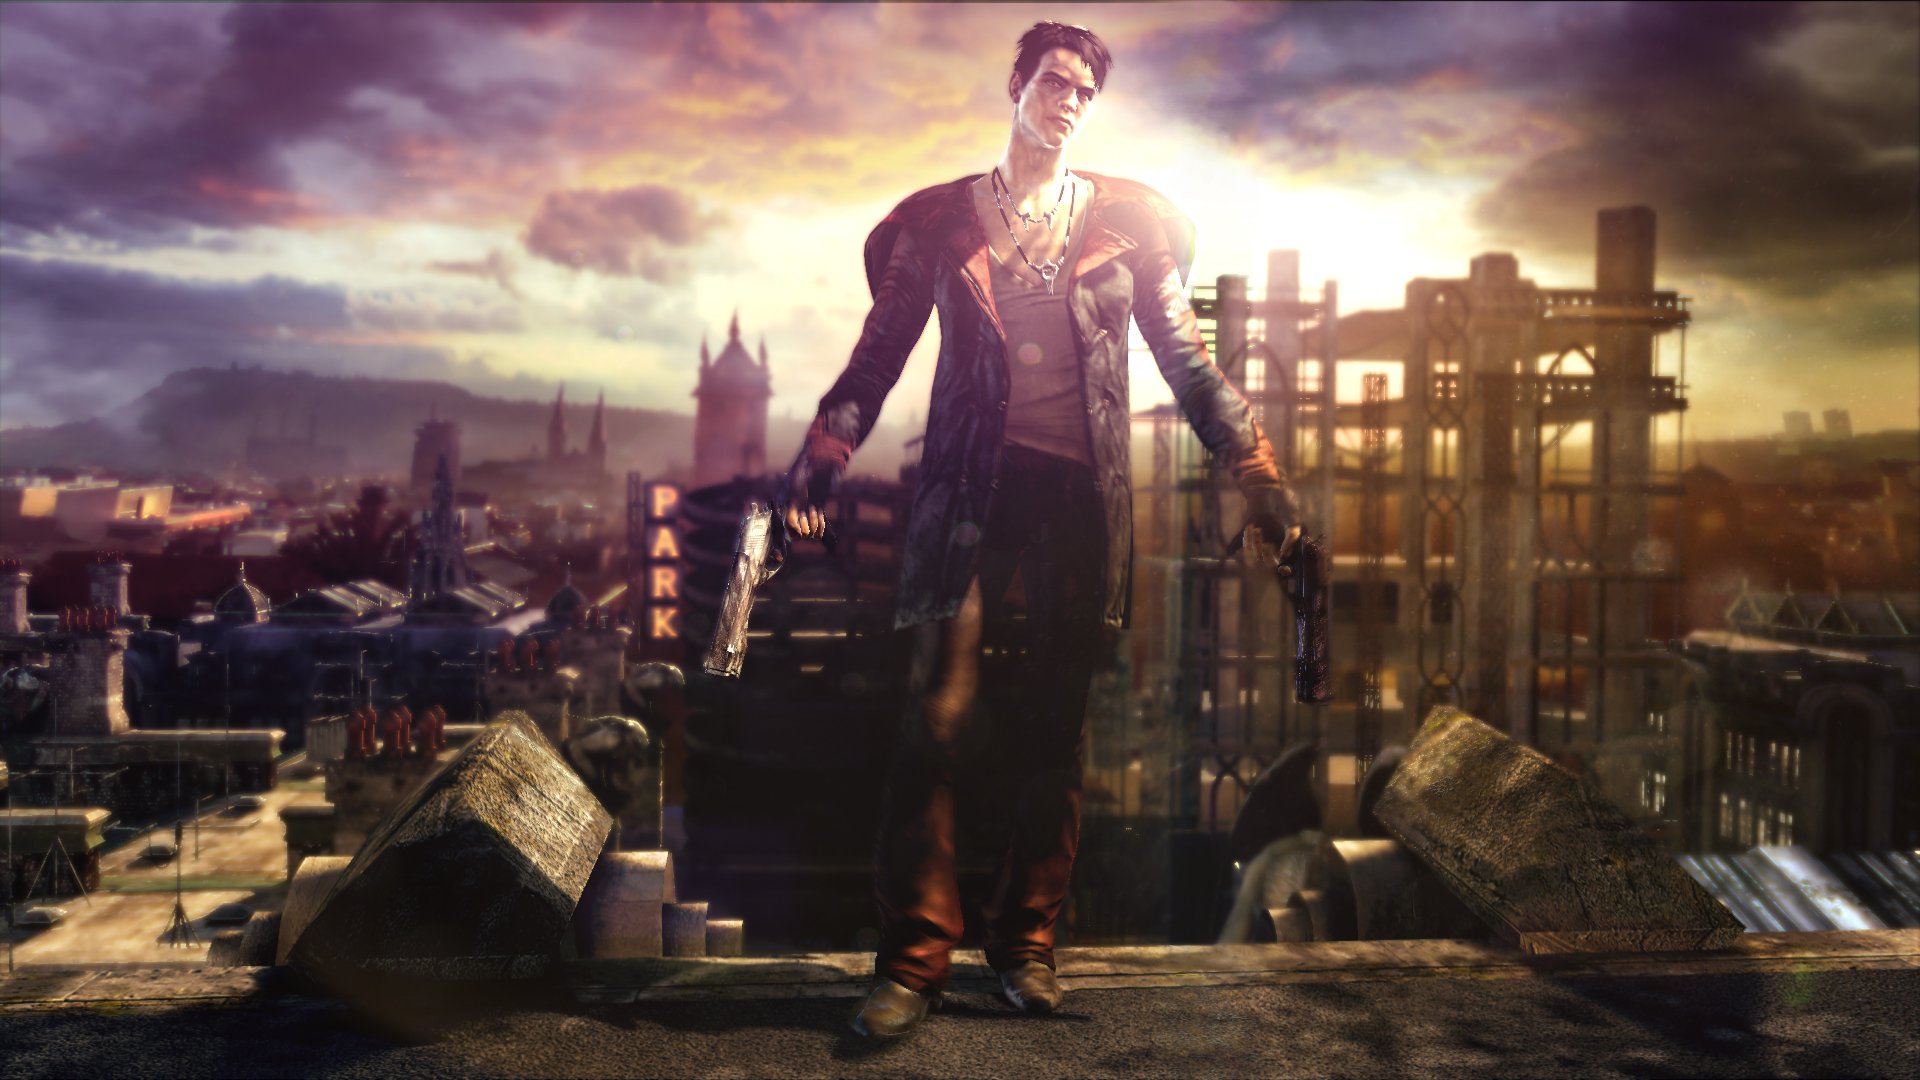 Devil May Cry 5 contará com demo jogável na Gamescom